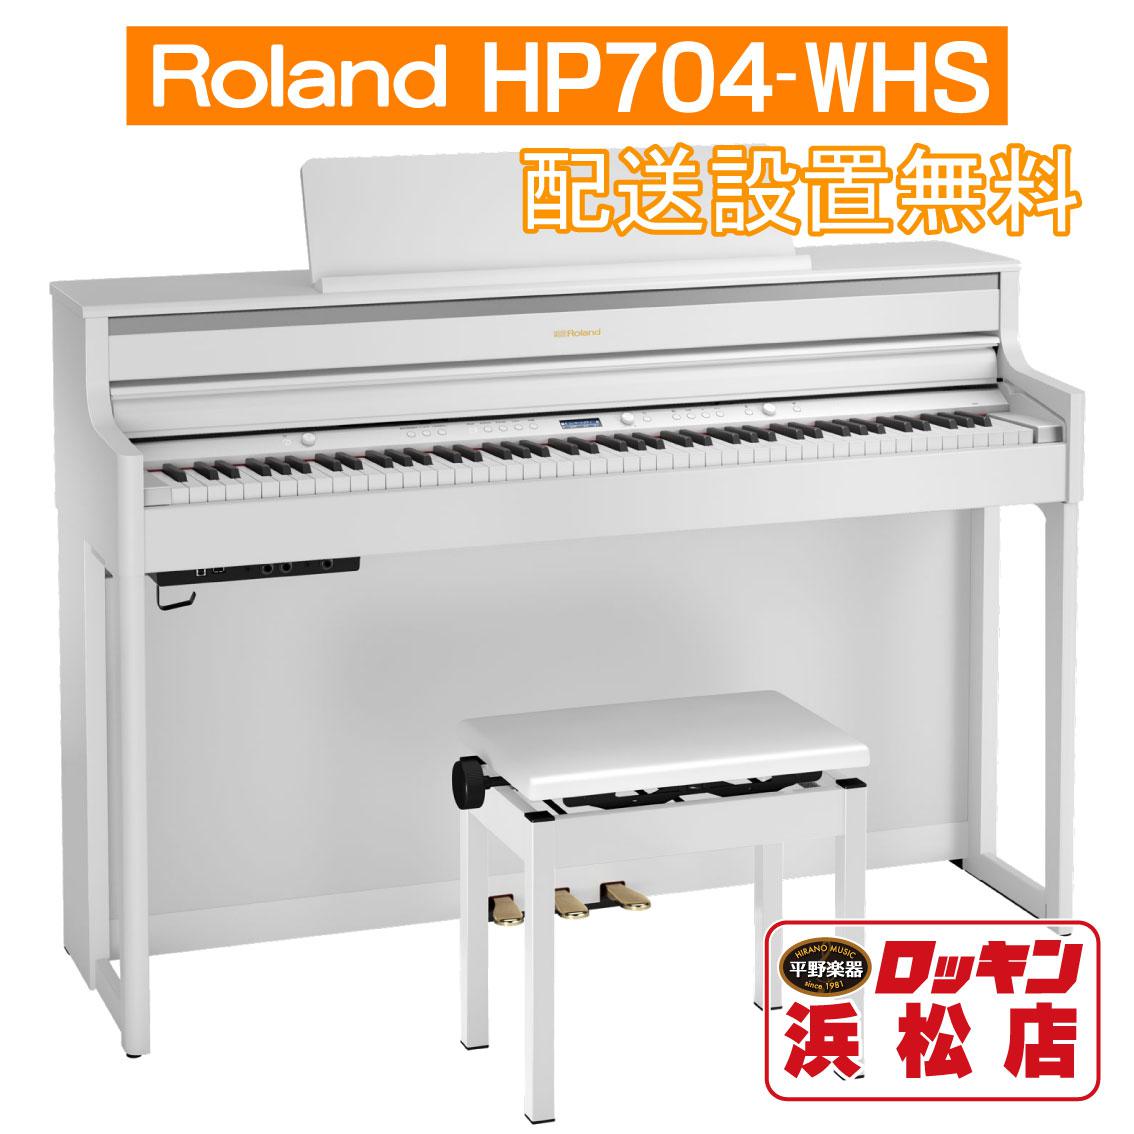 お得なキャンペーンを実施中 Roland HP704-WHS ホワイト 当店限定 3年保証